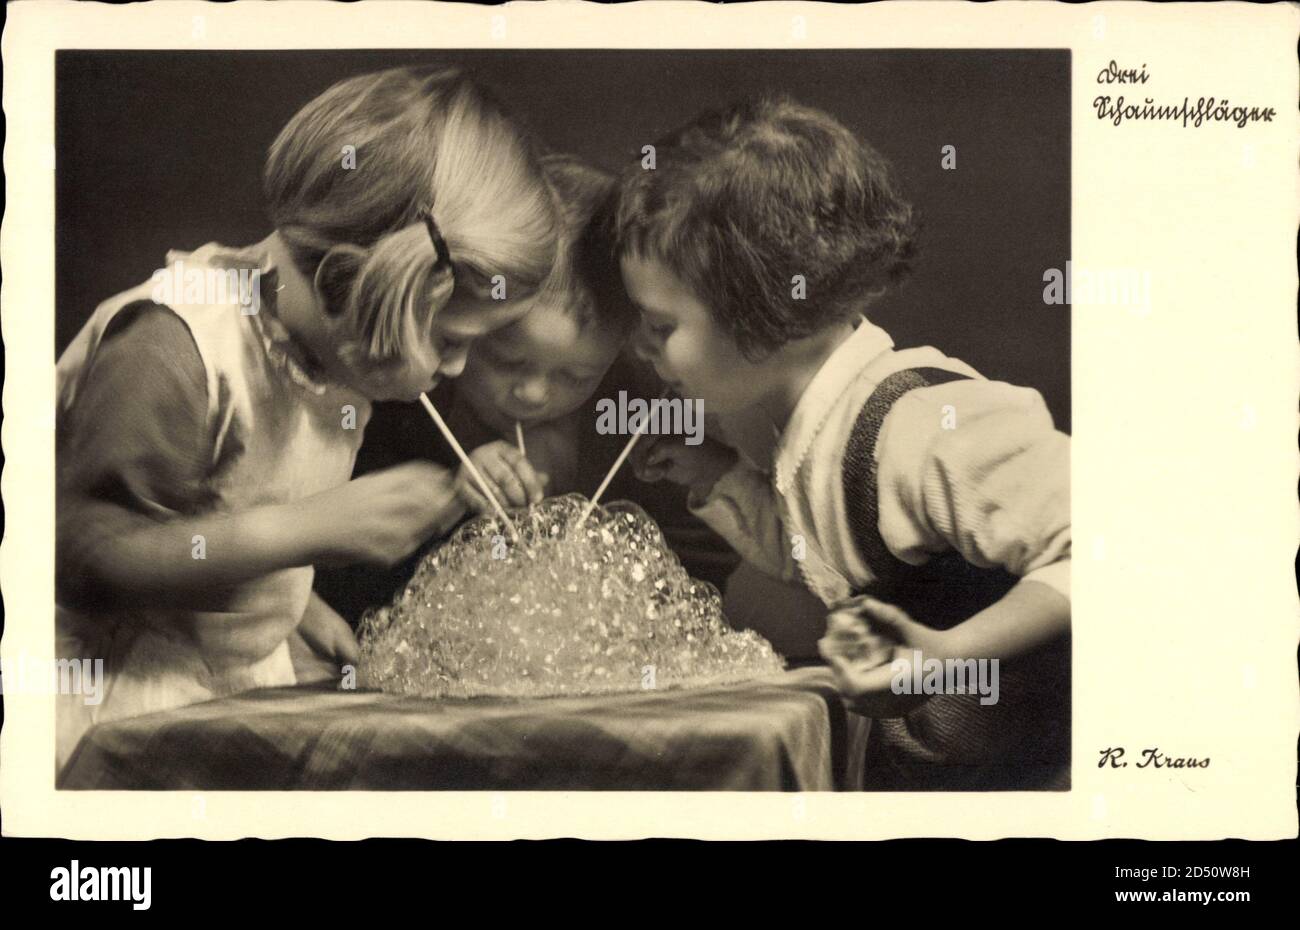 Drei Schaumschläger, Kinder spielen mit Seifenblasen, Strohhhalme | usage worldwide Foto Stock